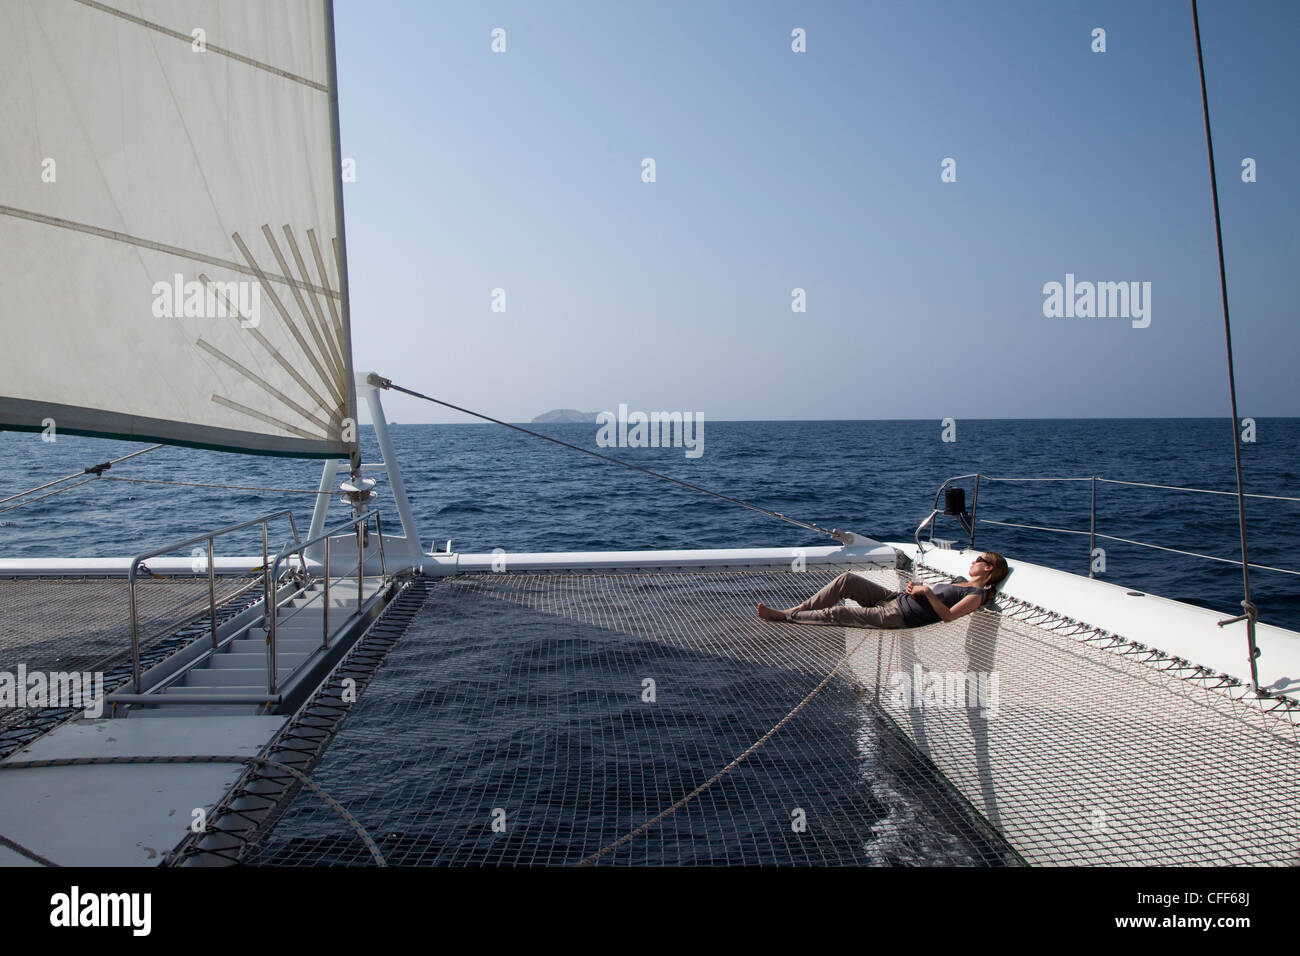 La donna si rilassa su net di catamarano SY Azzura, Ocean Blue Oman crociere, durante escursioni in barca a vela, Muscat, Masqat, Oman, Arabian Pe Foto Stock